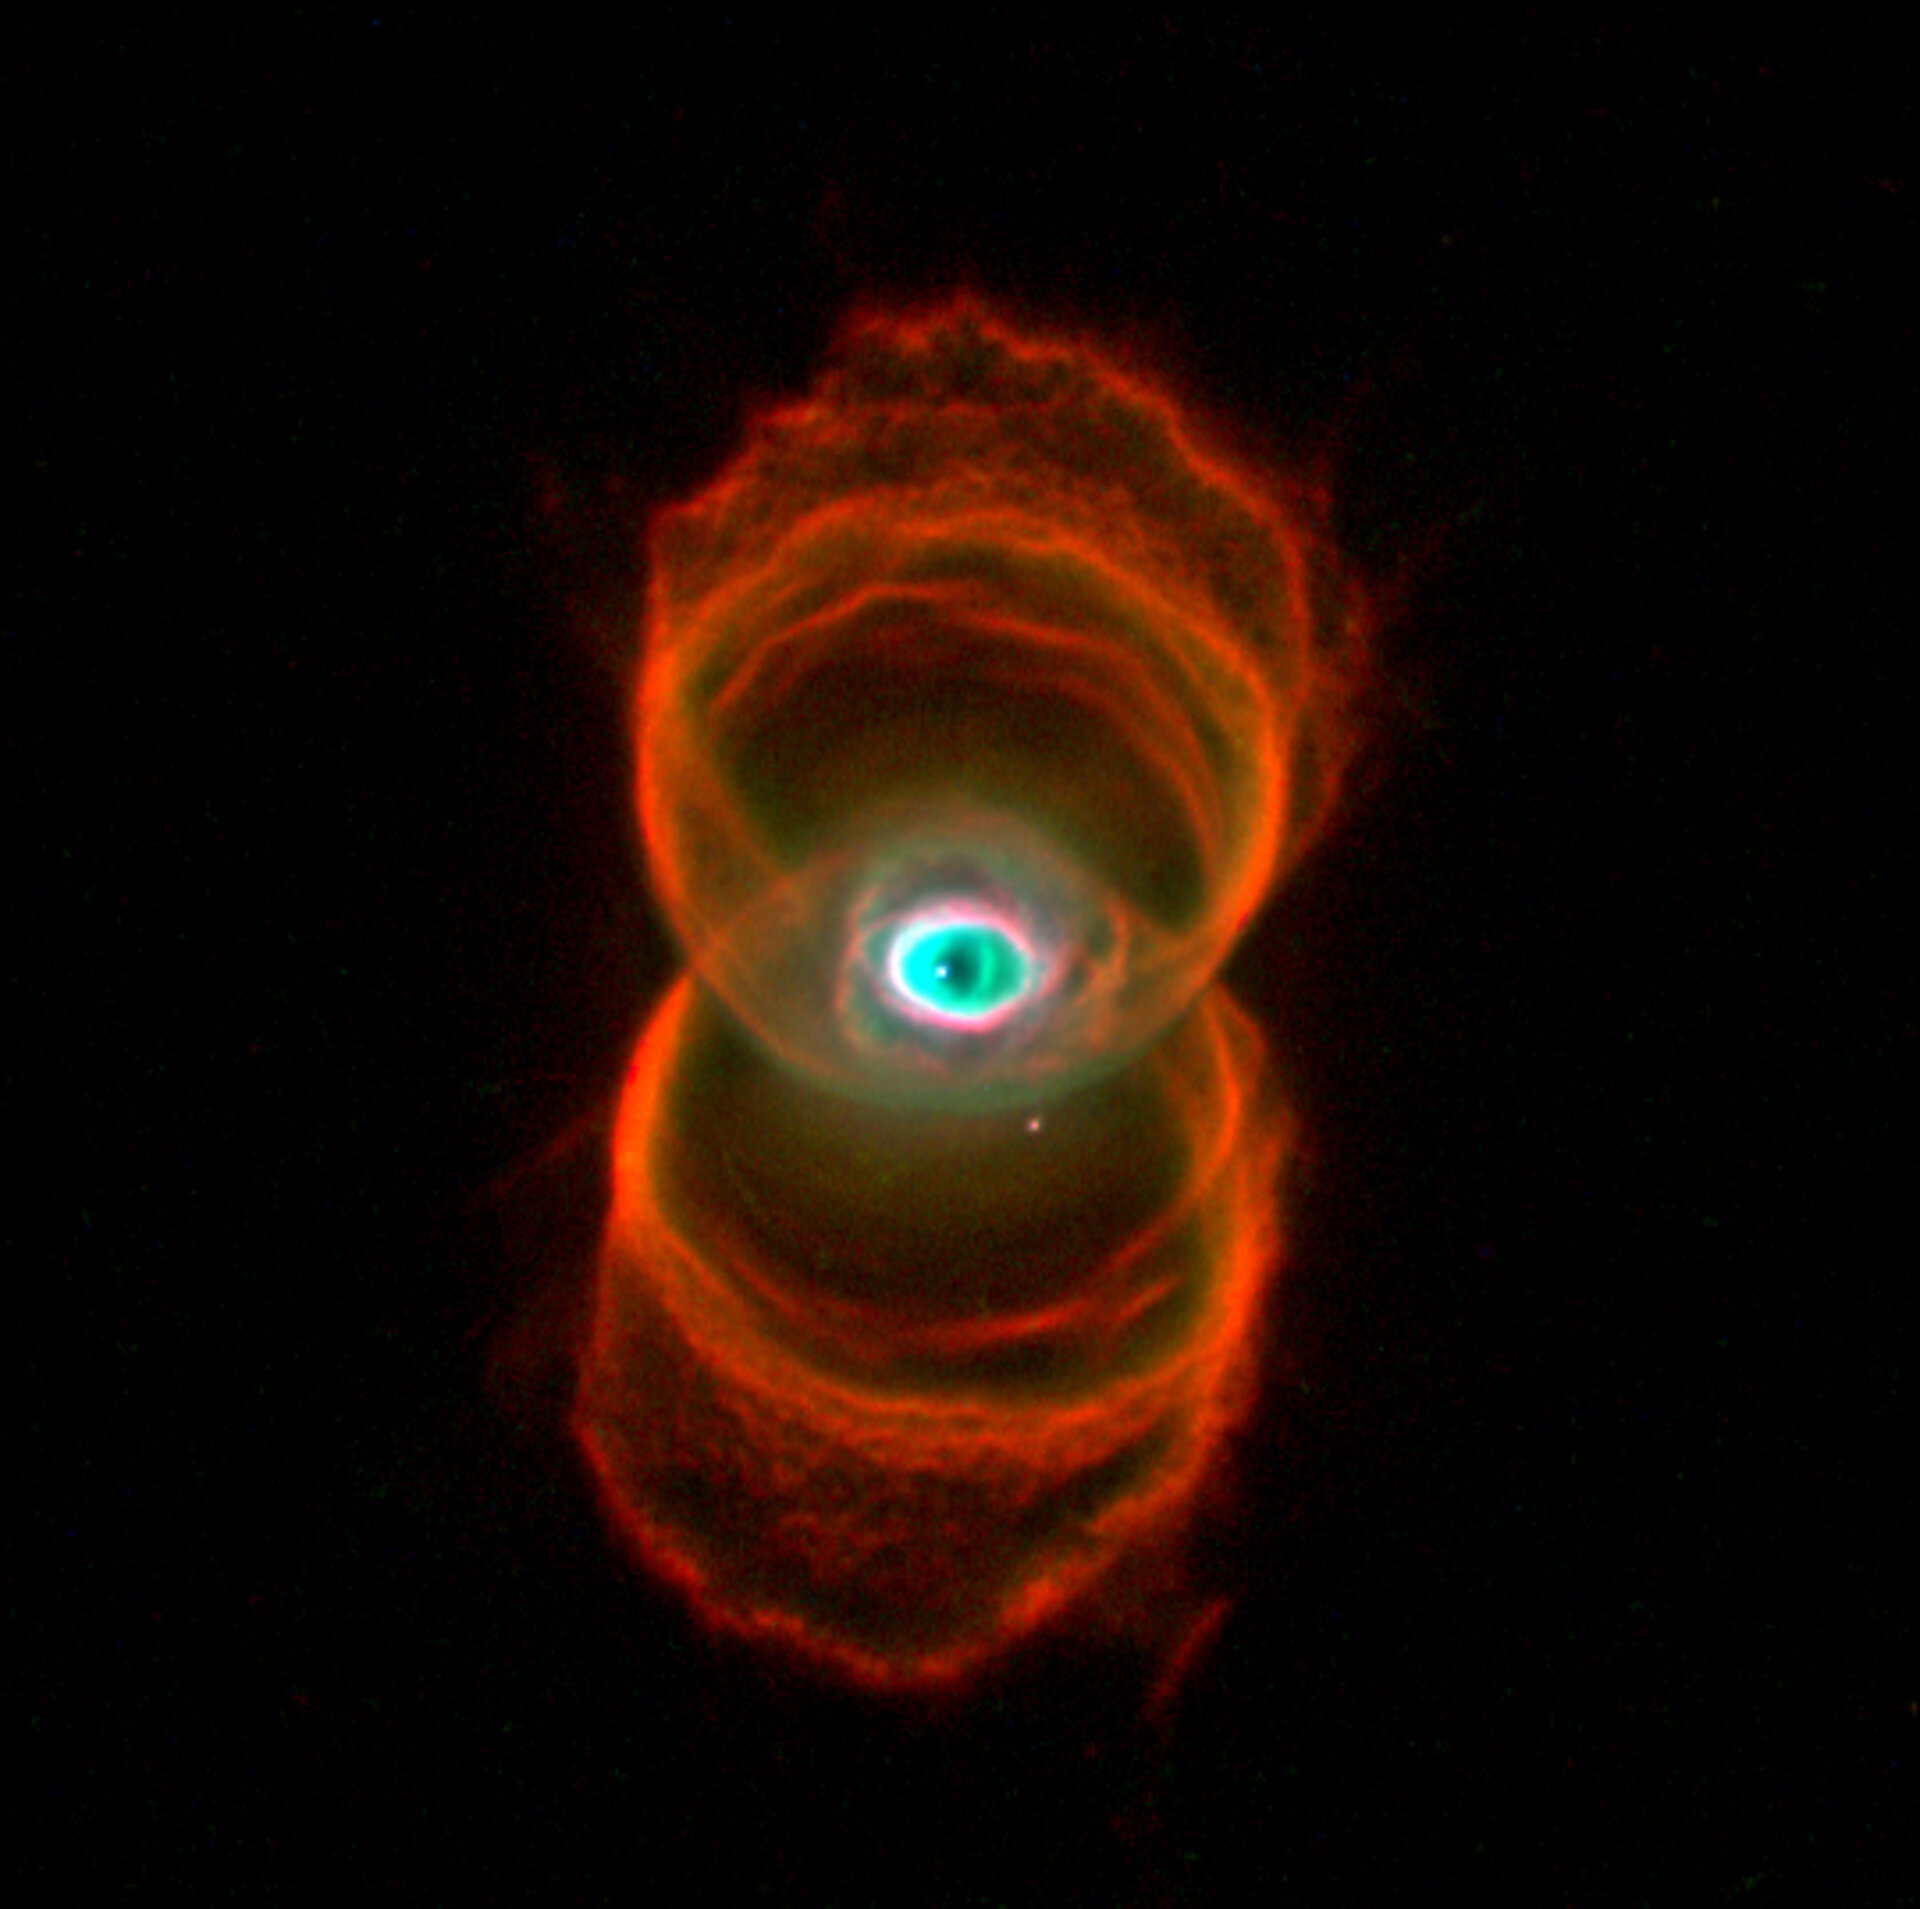 Hourglass Nebula, a planetary nebula